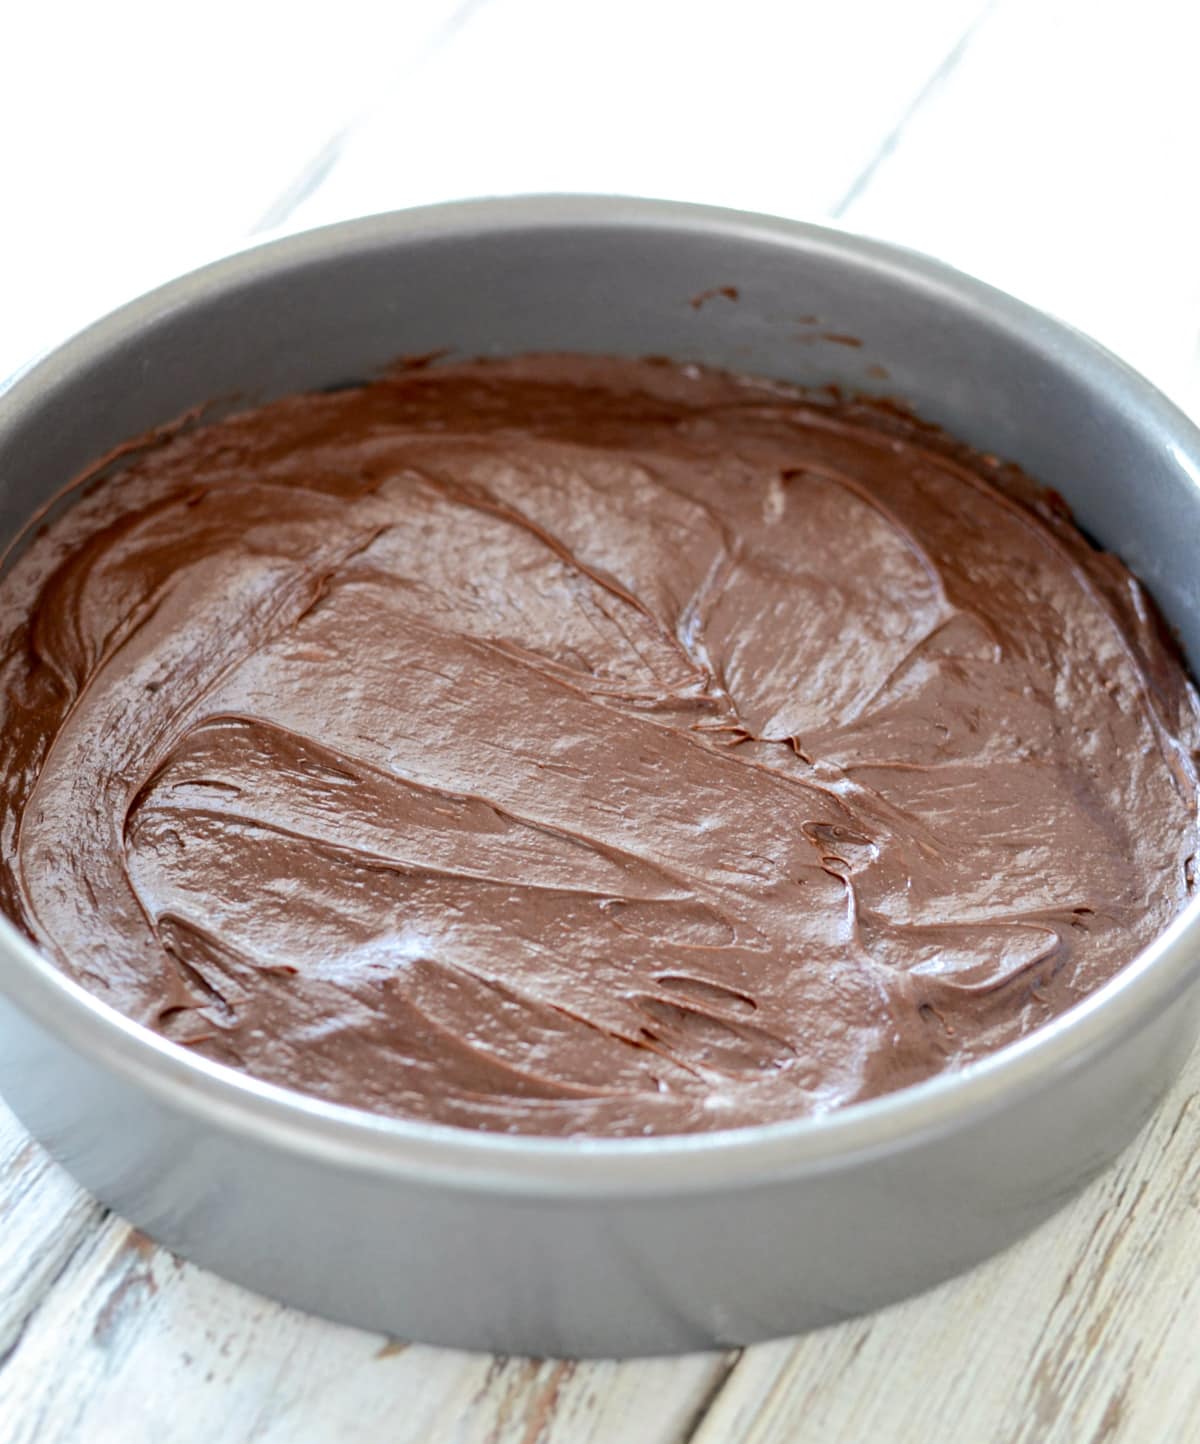 Chocolate cake batter in circle pan.